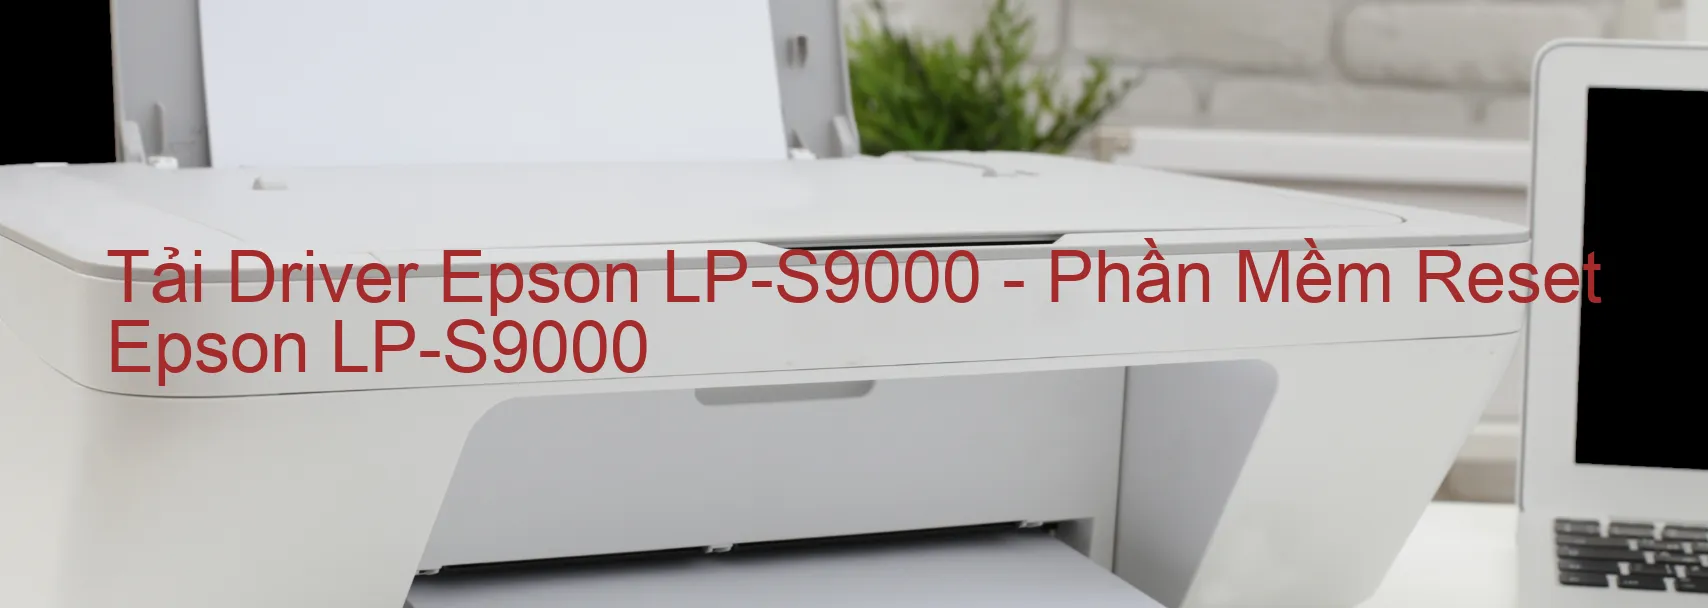 Driver Epson LP-S9000, Phần Mềm Reset Epson LP-S9000